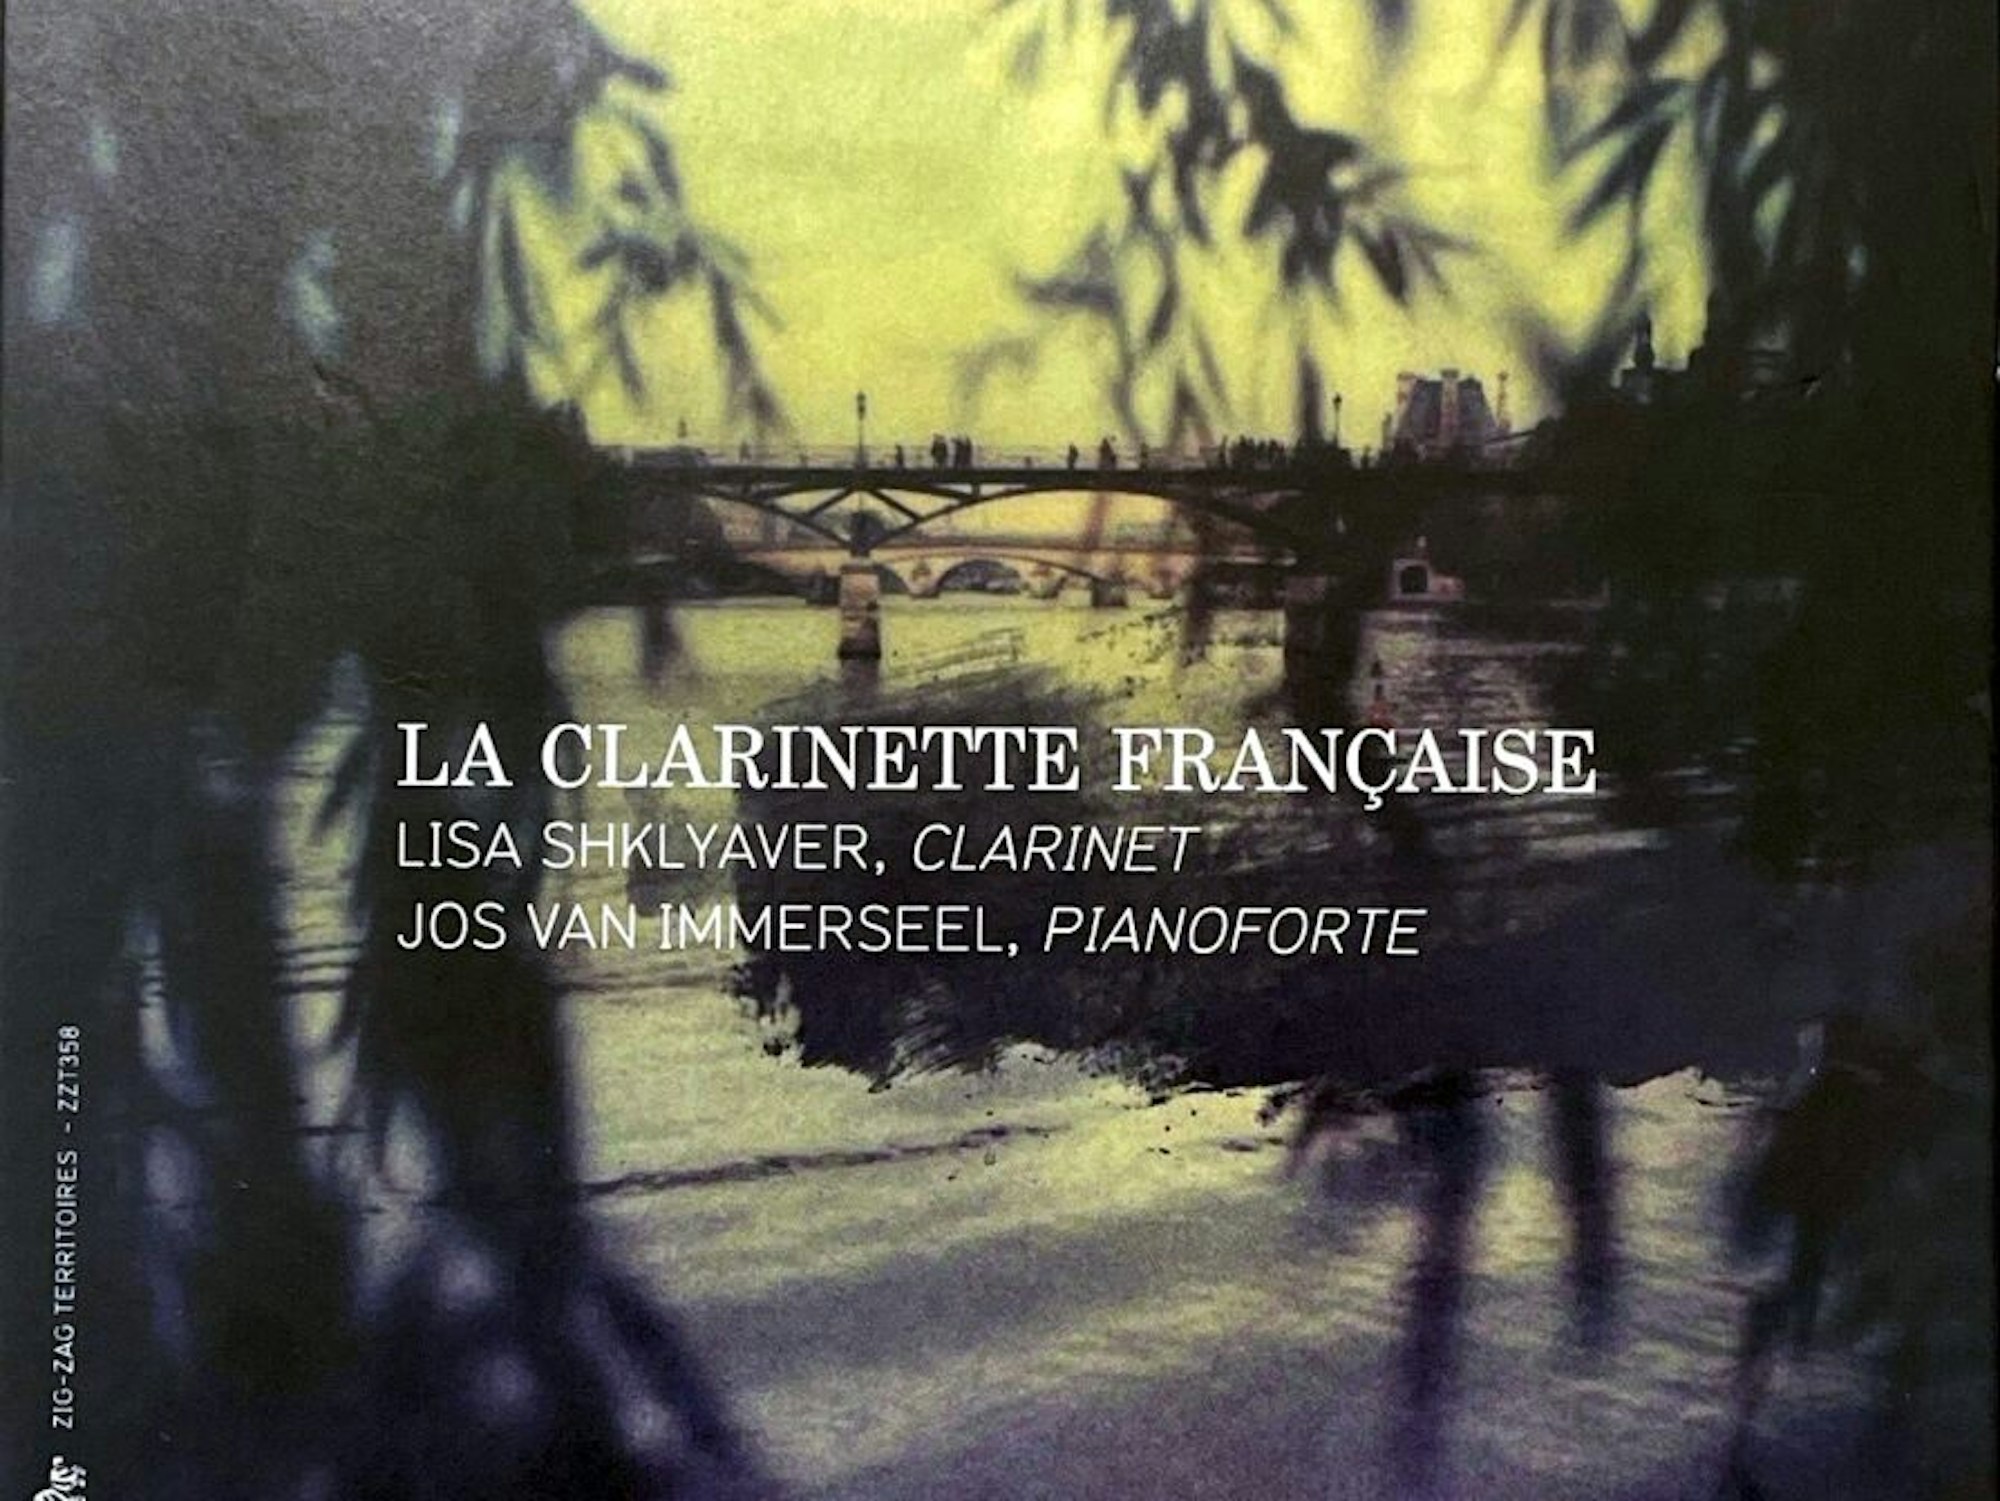 Das jüngste Album mit französischer Klarinettenmusik.